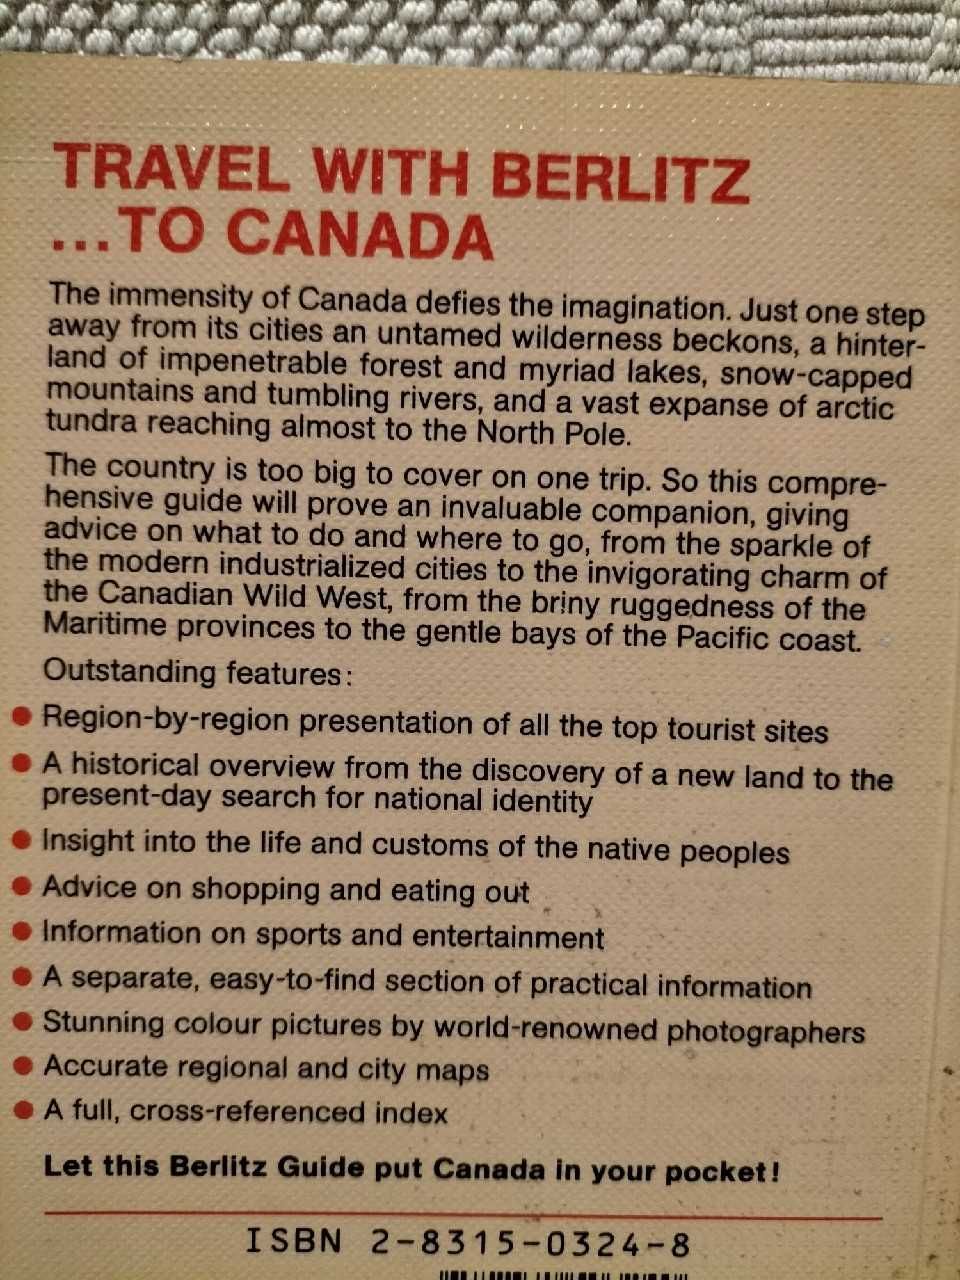 Kanada - przewodnik Berlitz